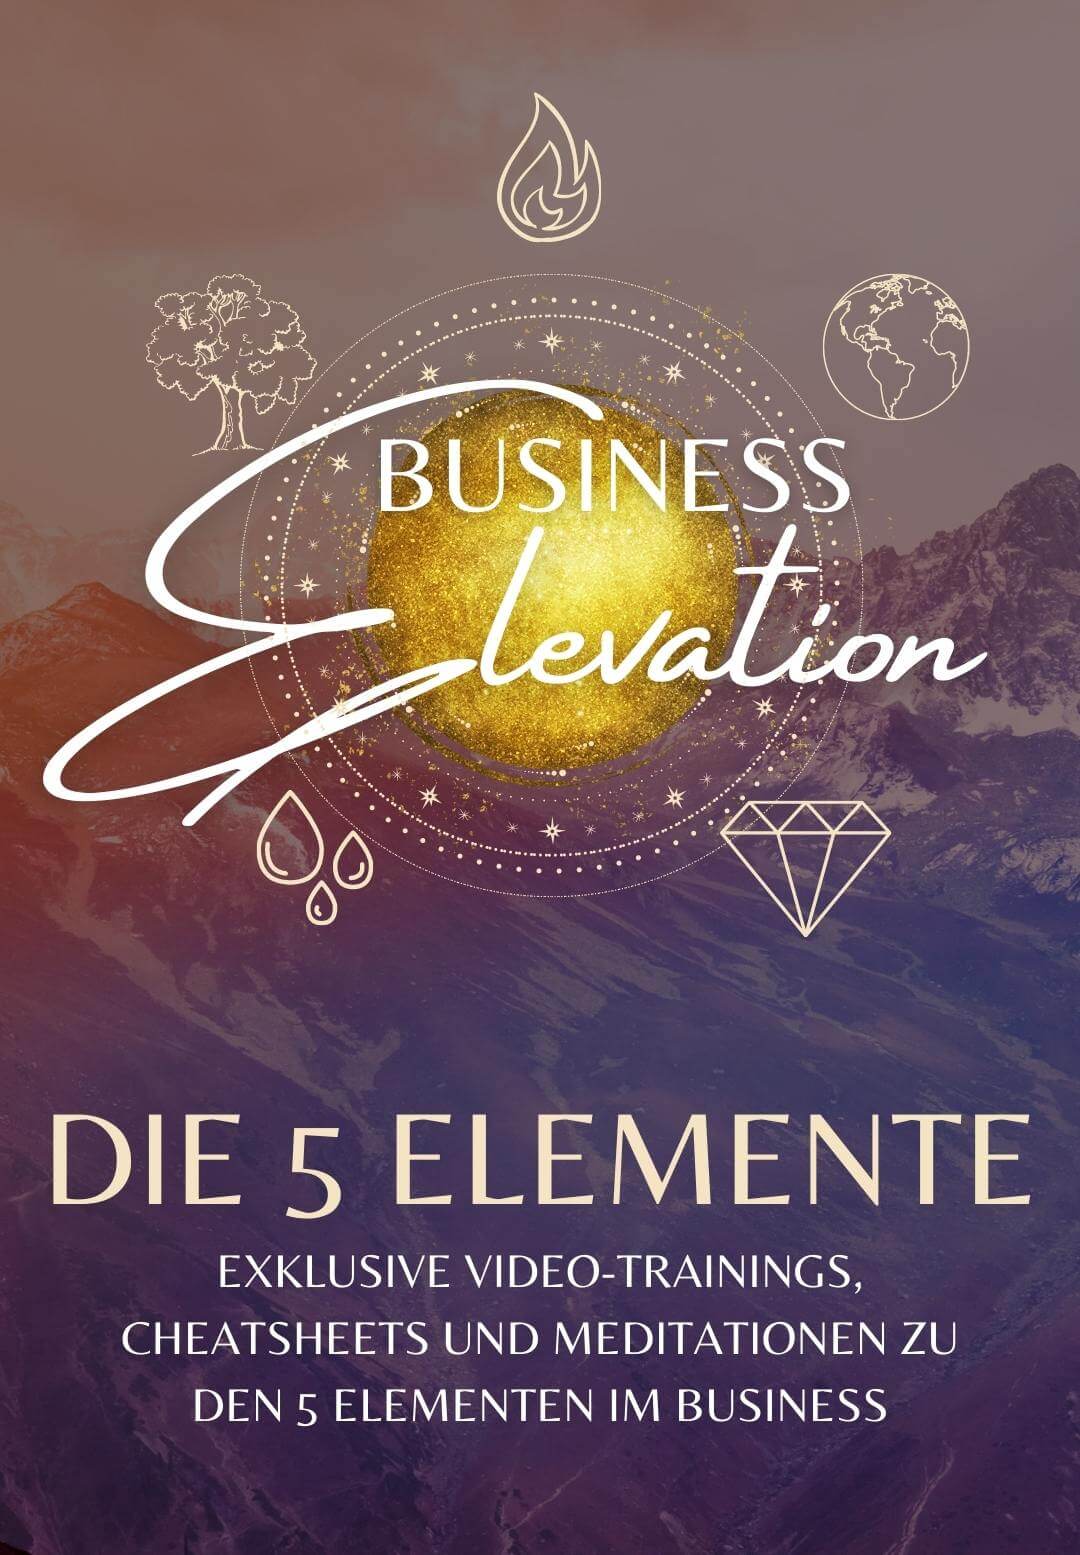 Mockups Business Elevation 5 Elemente